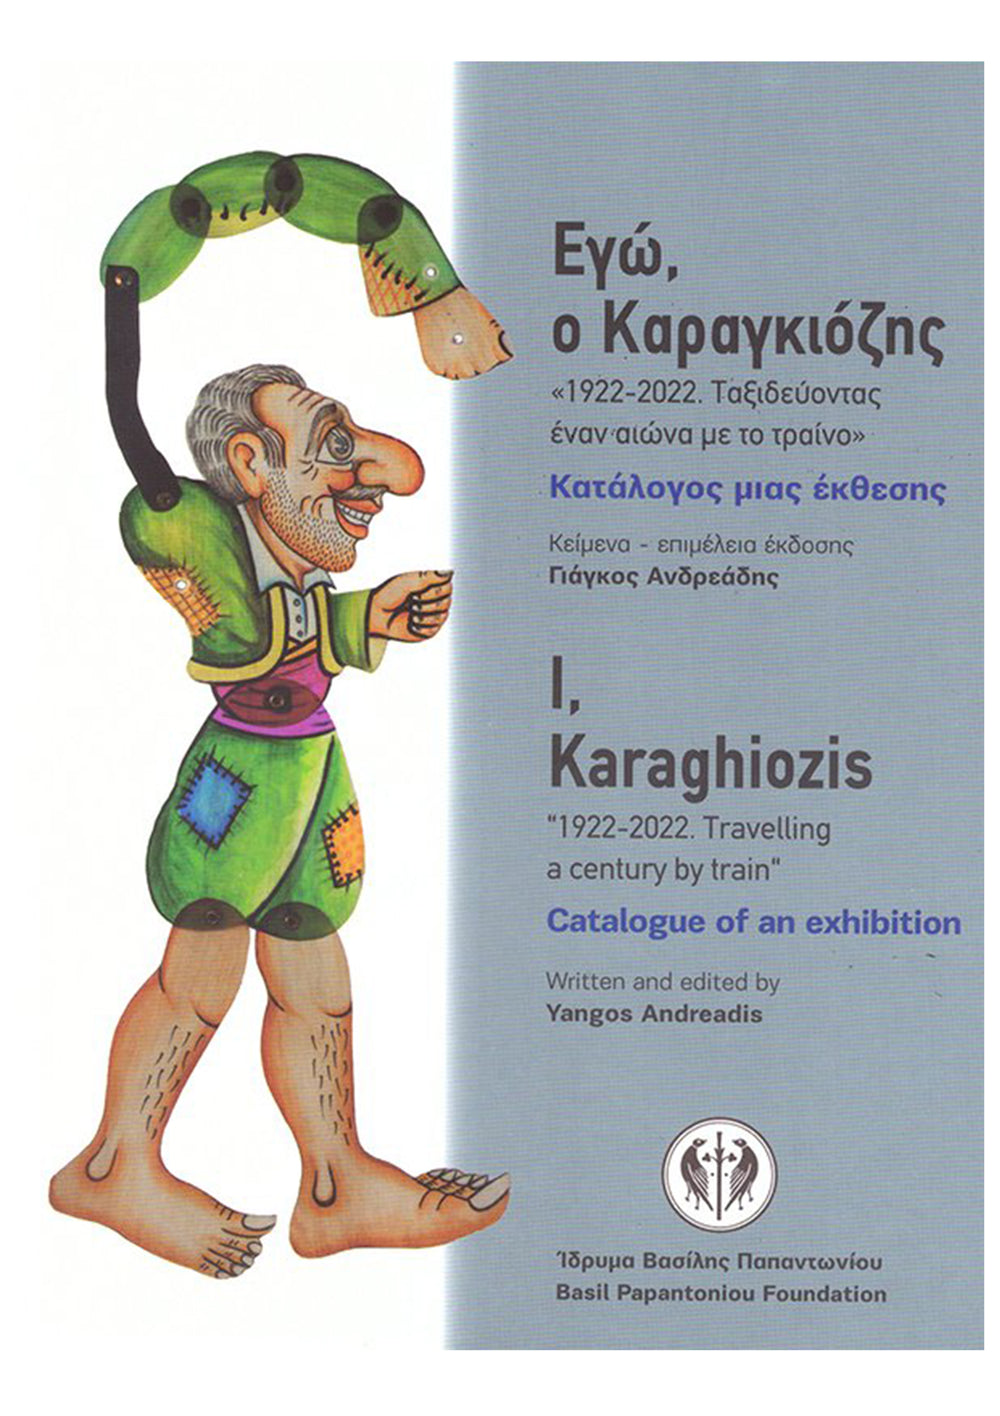 "I, Karaghiozis"